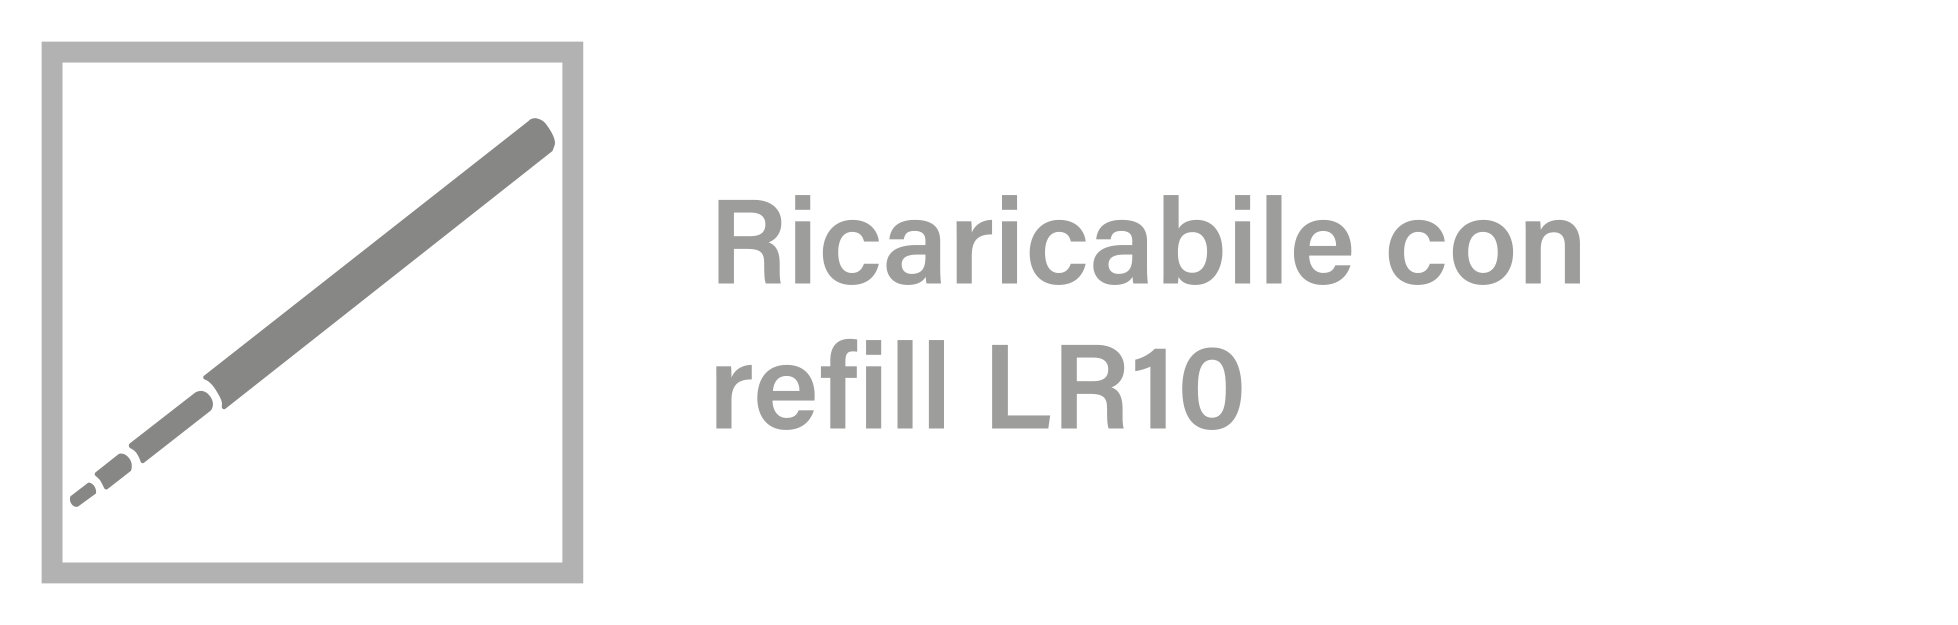 icona ricaricabile con refill senza scritta LR10